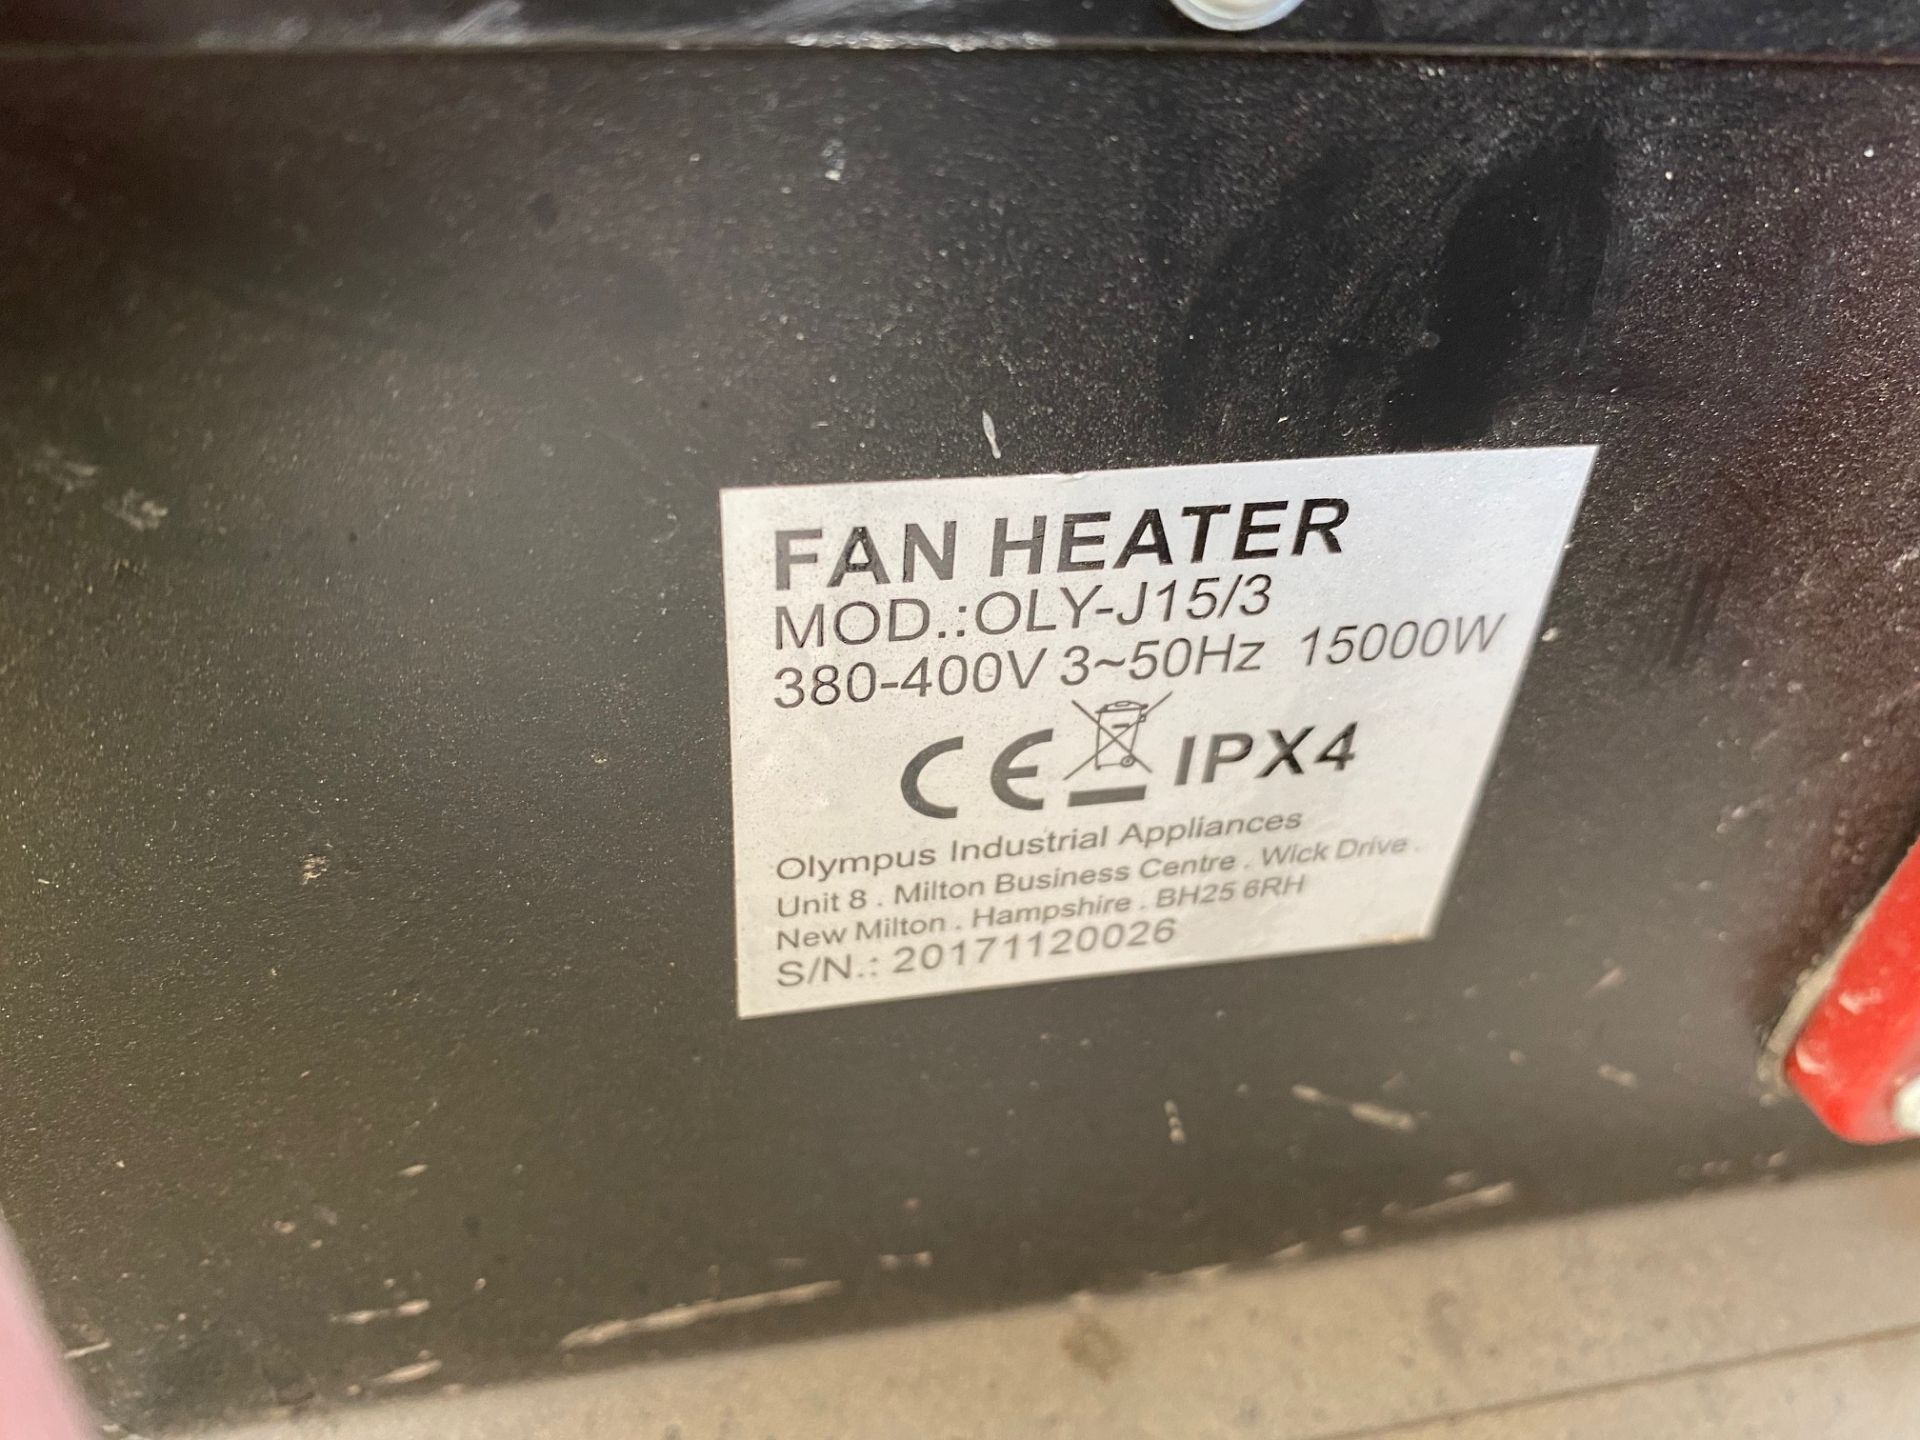 2x Jetheat, Model: OLYJ15/3 Fan Heater, 380-400v, 15000w, DOM: 2017 (Location of Lot East Marsh - Image 2 of 6